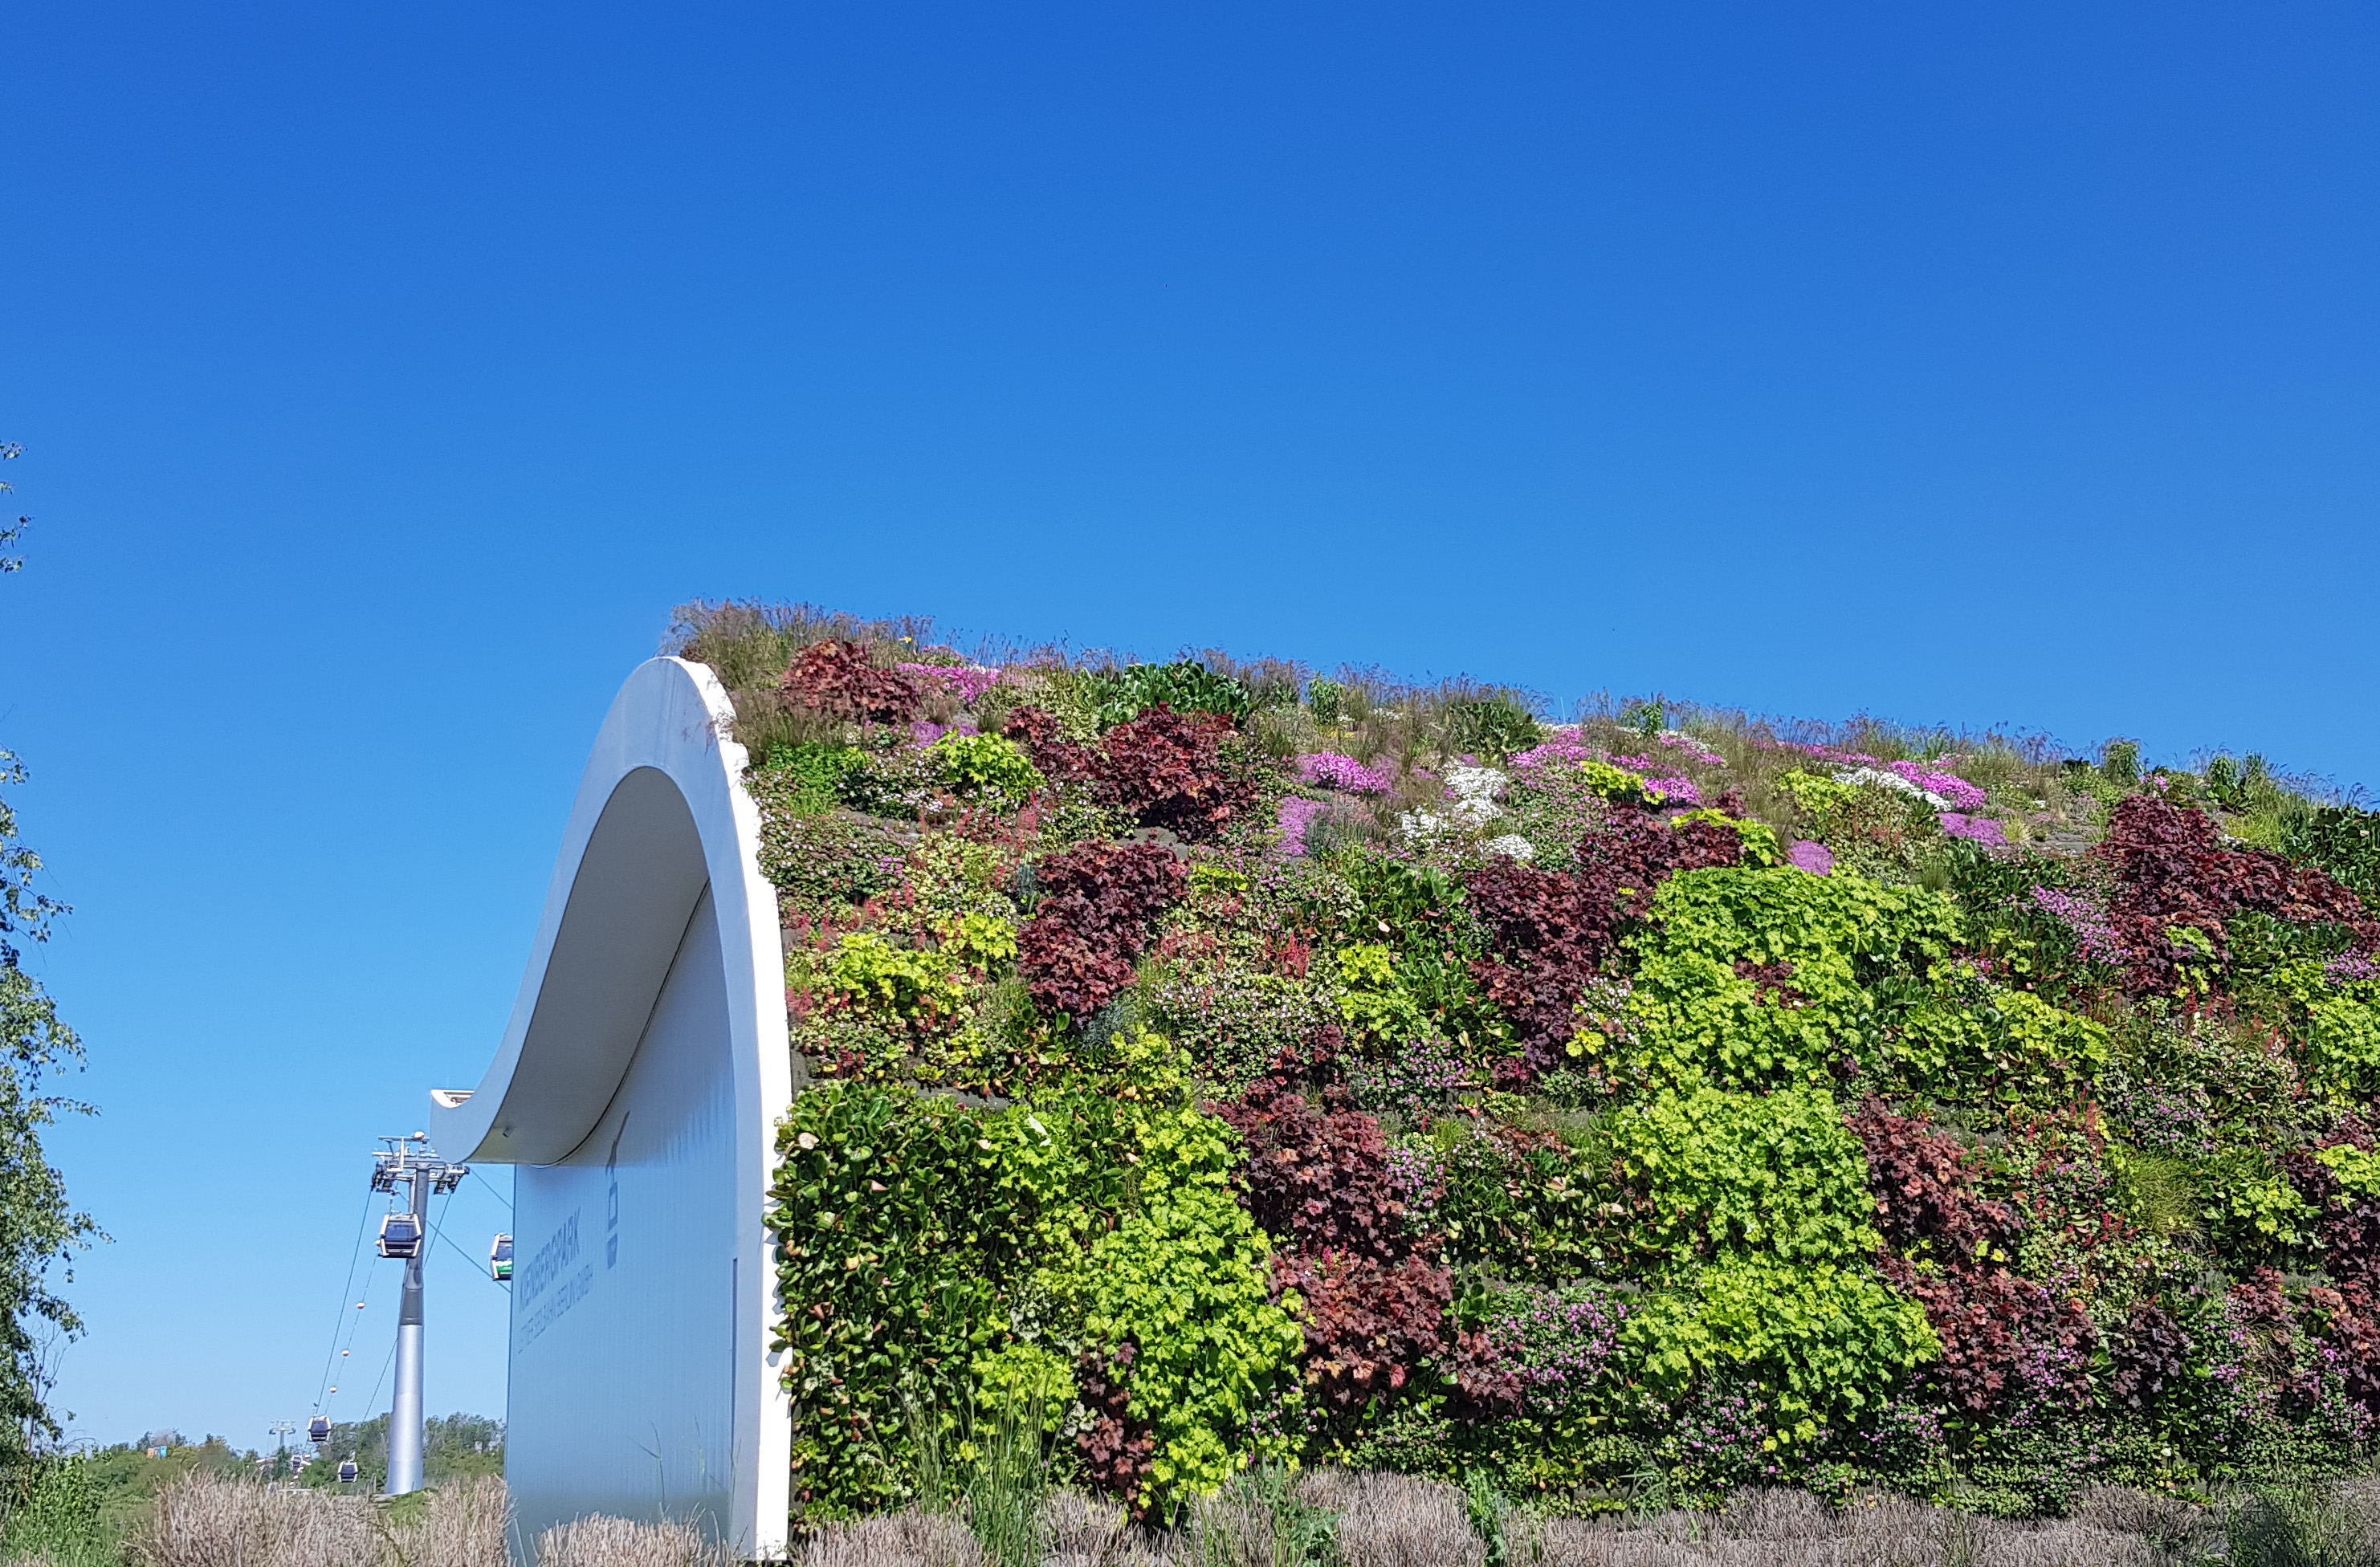 Seilbahnstation in den Gärten der Welt mit begrüntem Dach